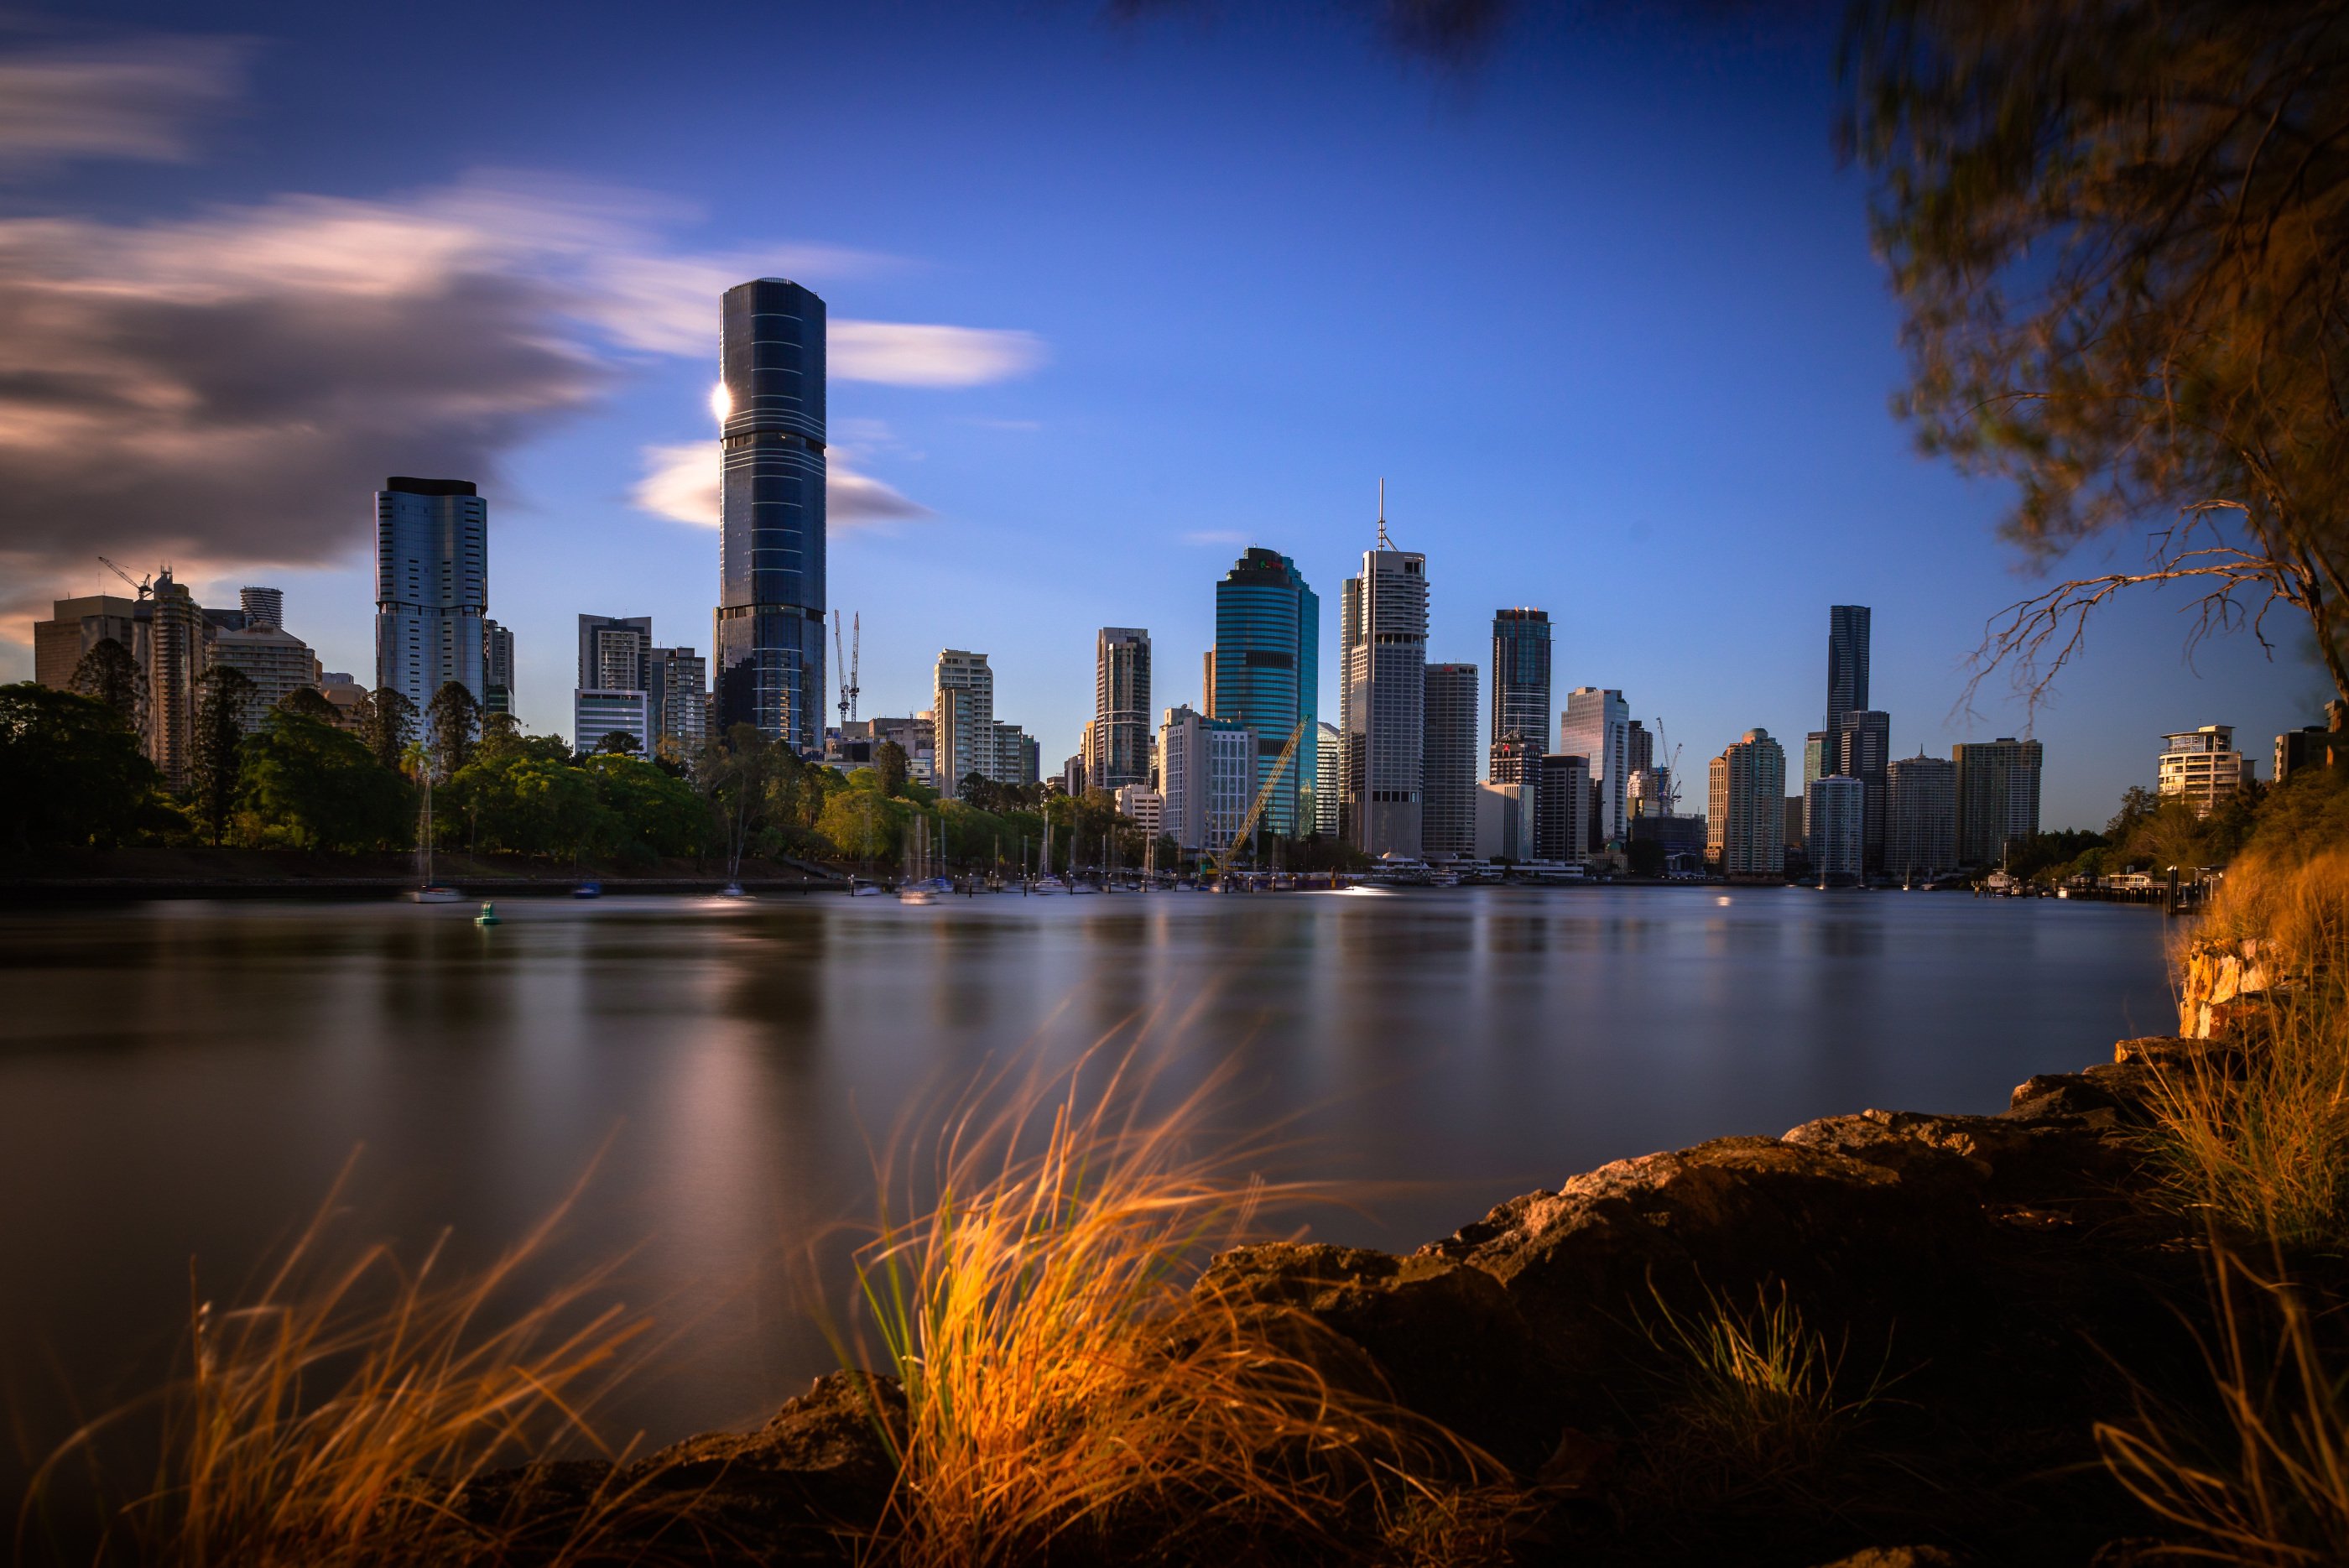 Die Skyline von Brisbane neben einem Fluss